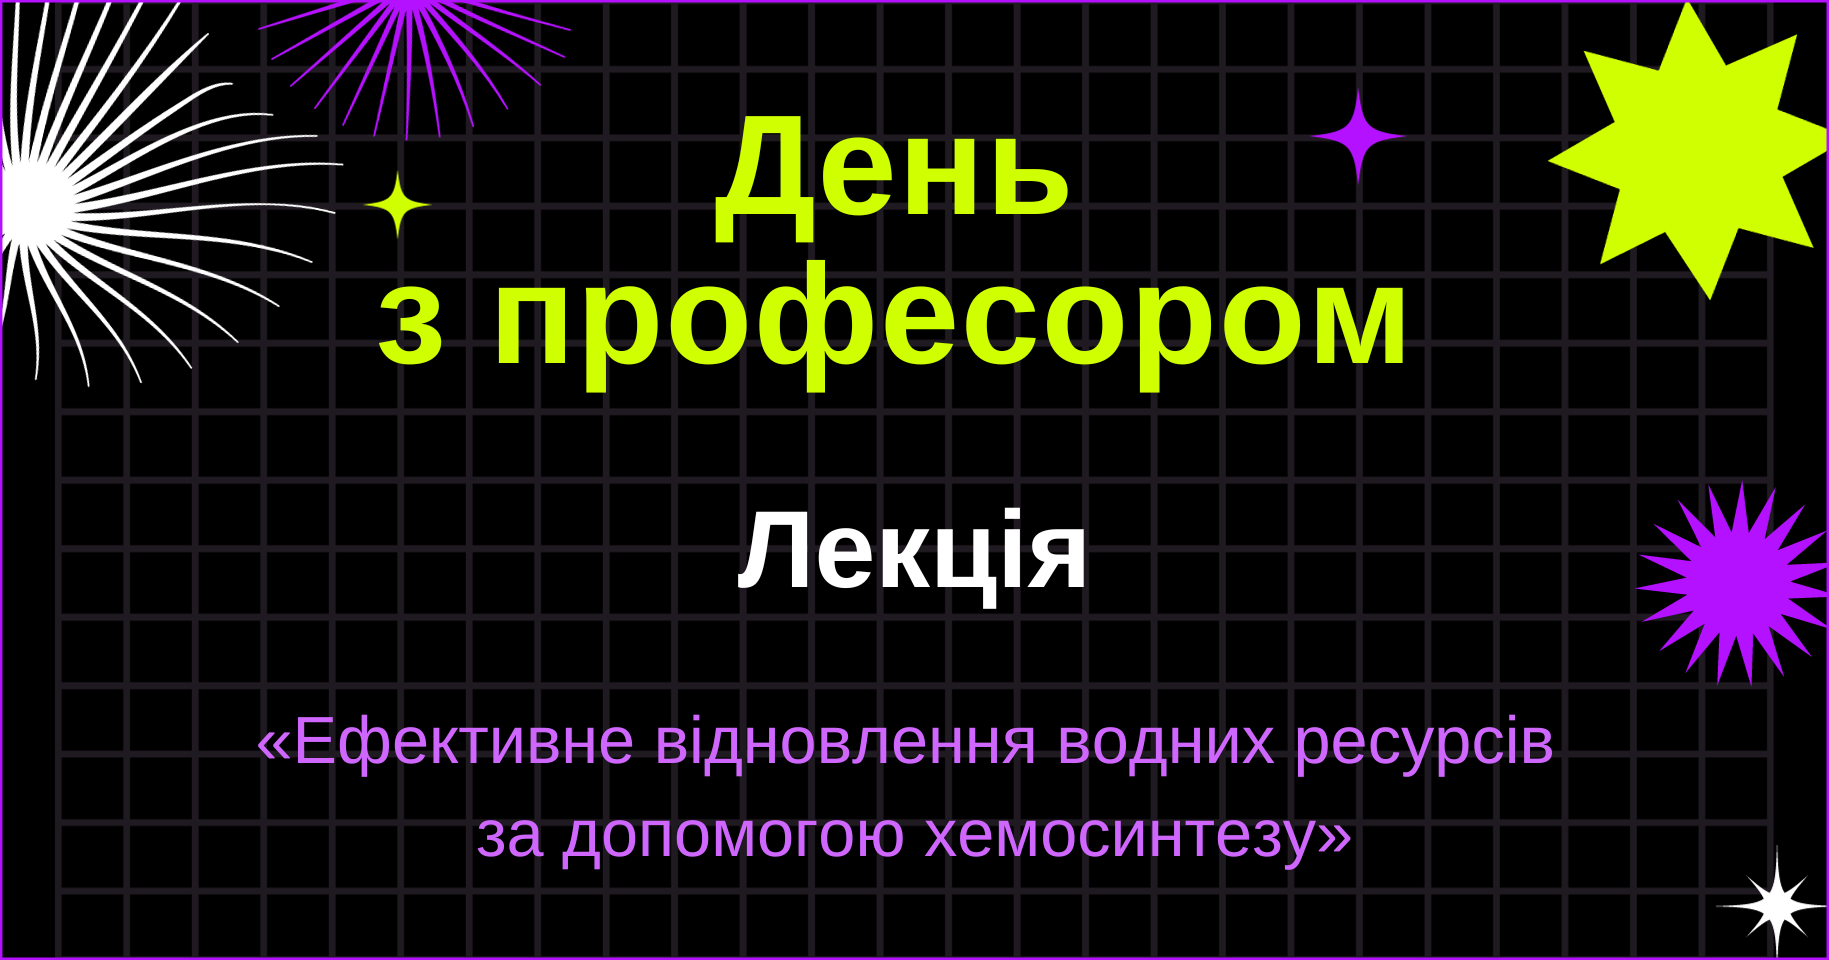 Всеукраїнський освітній проєкт «День з професором»: лекція з біології